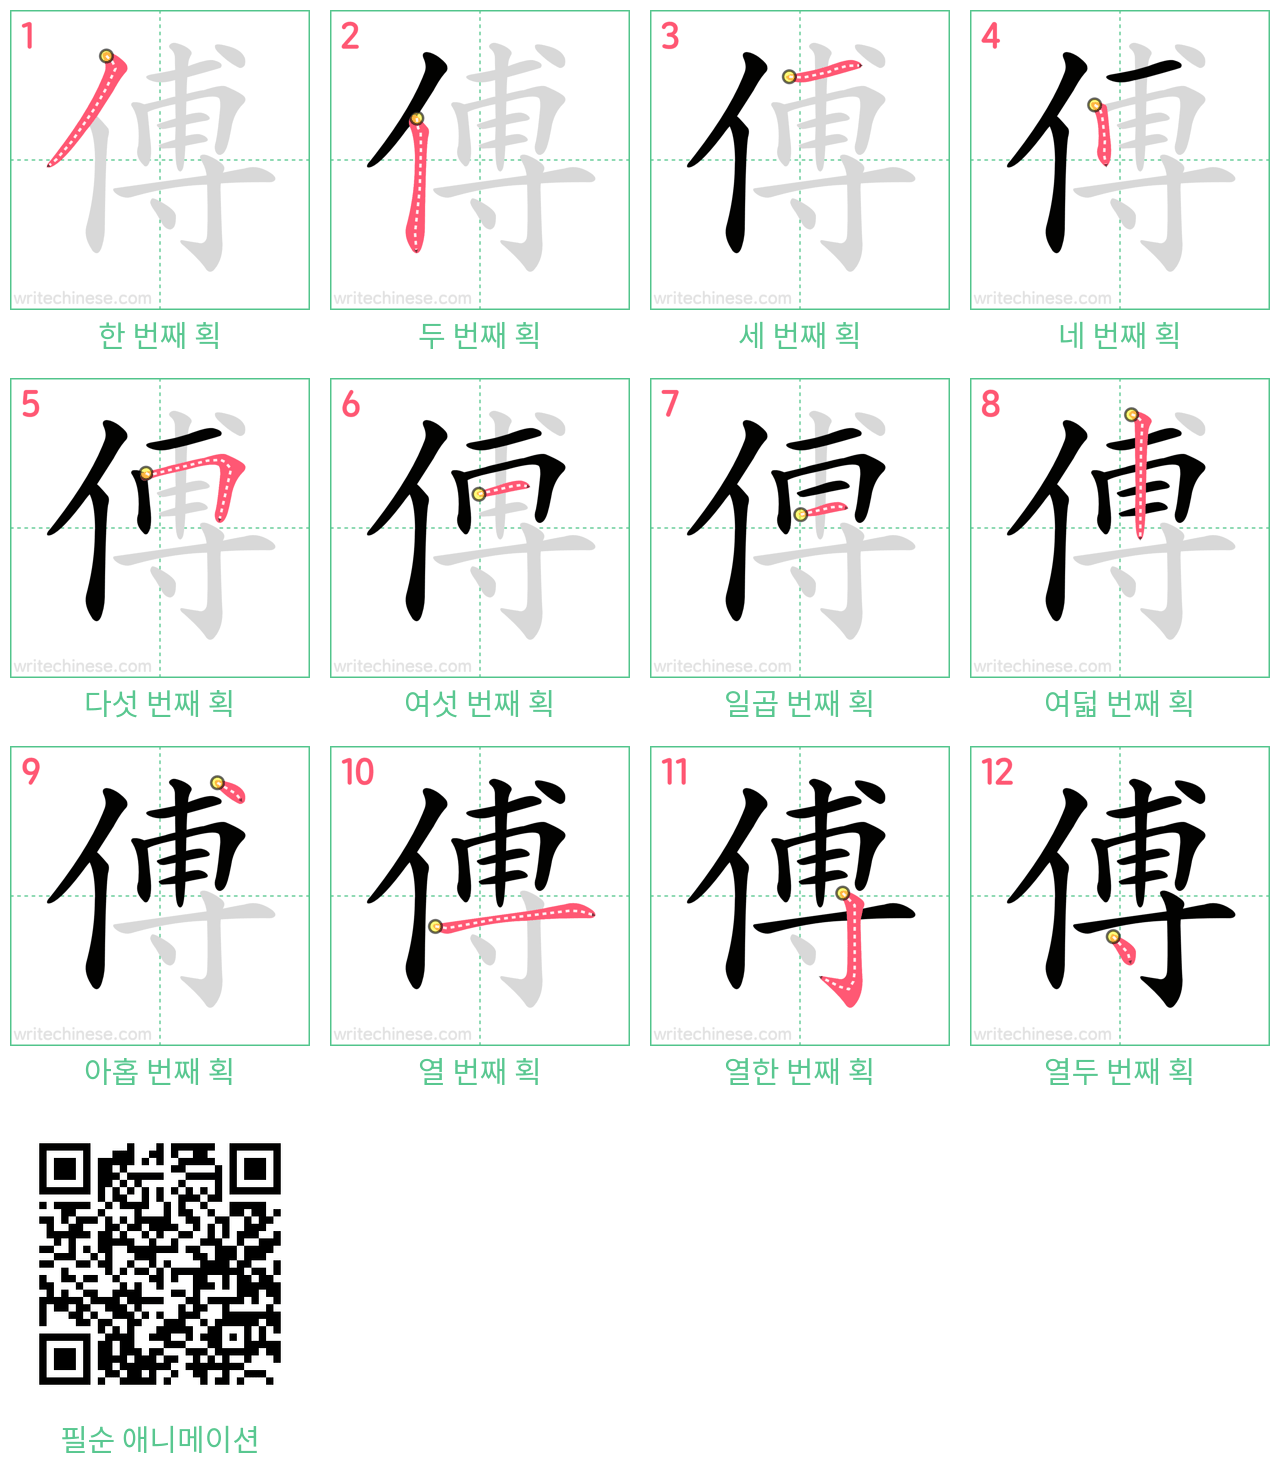 傅 step-by-step stroke order diagrams